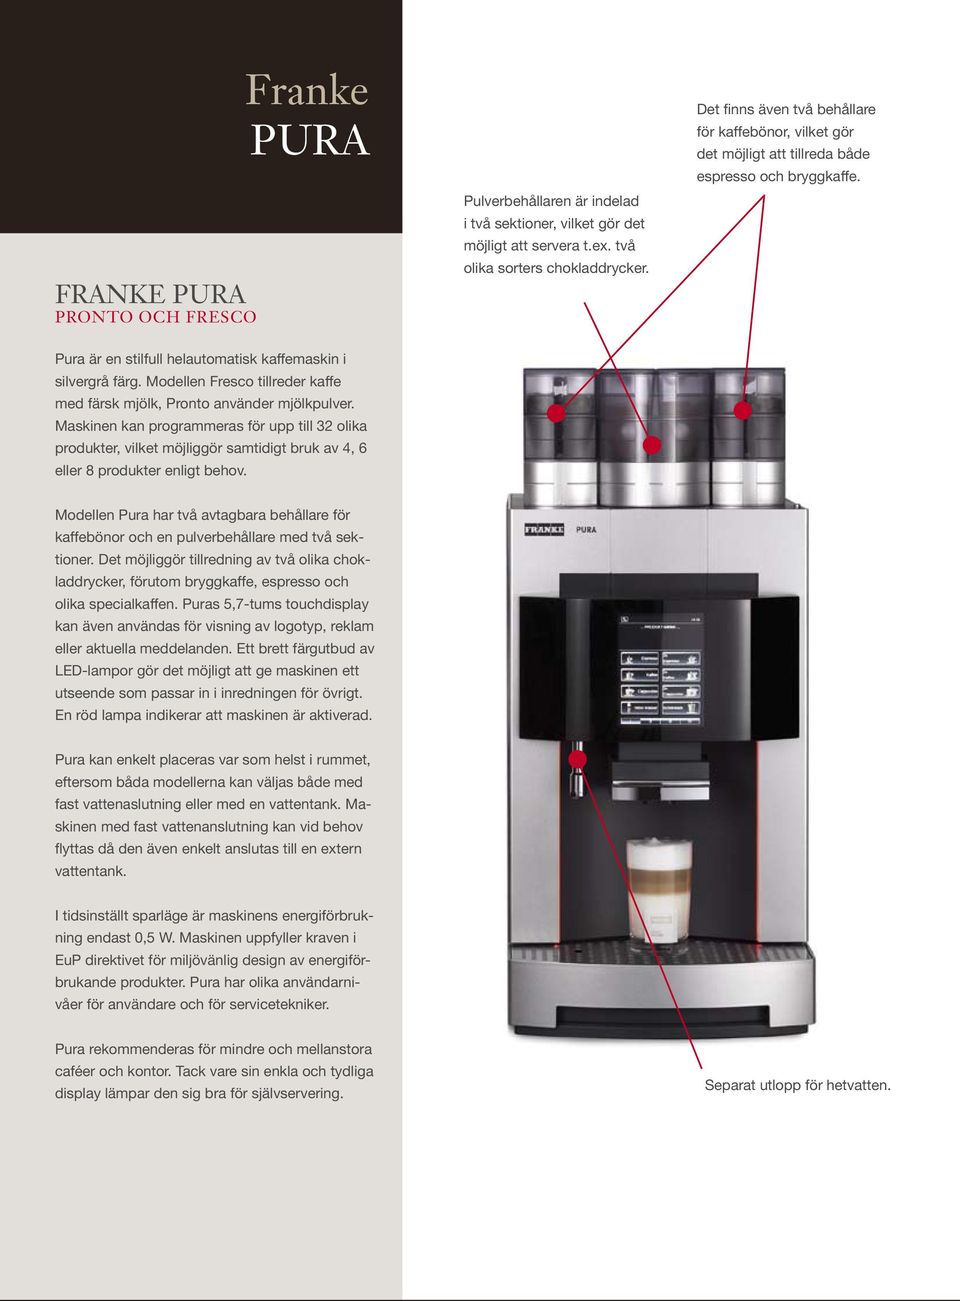 Modellen Fresco tillreder kaffe med färsk mjölk, Pronto använder mjölkpulver.